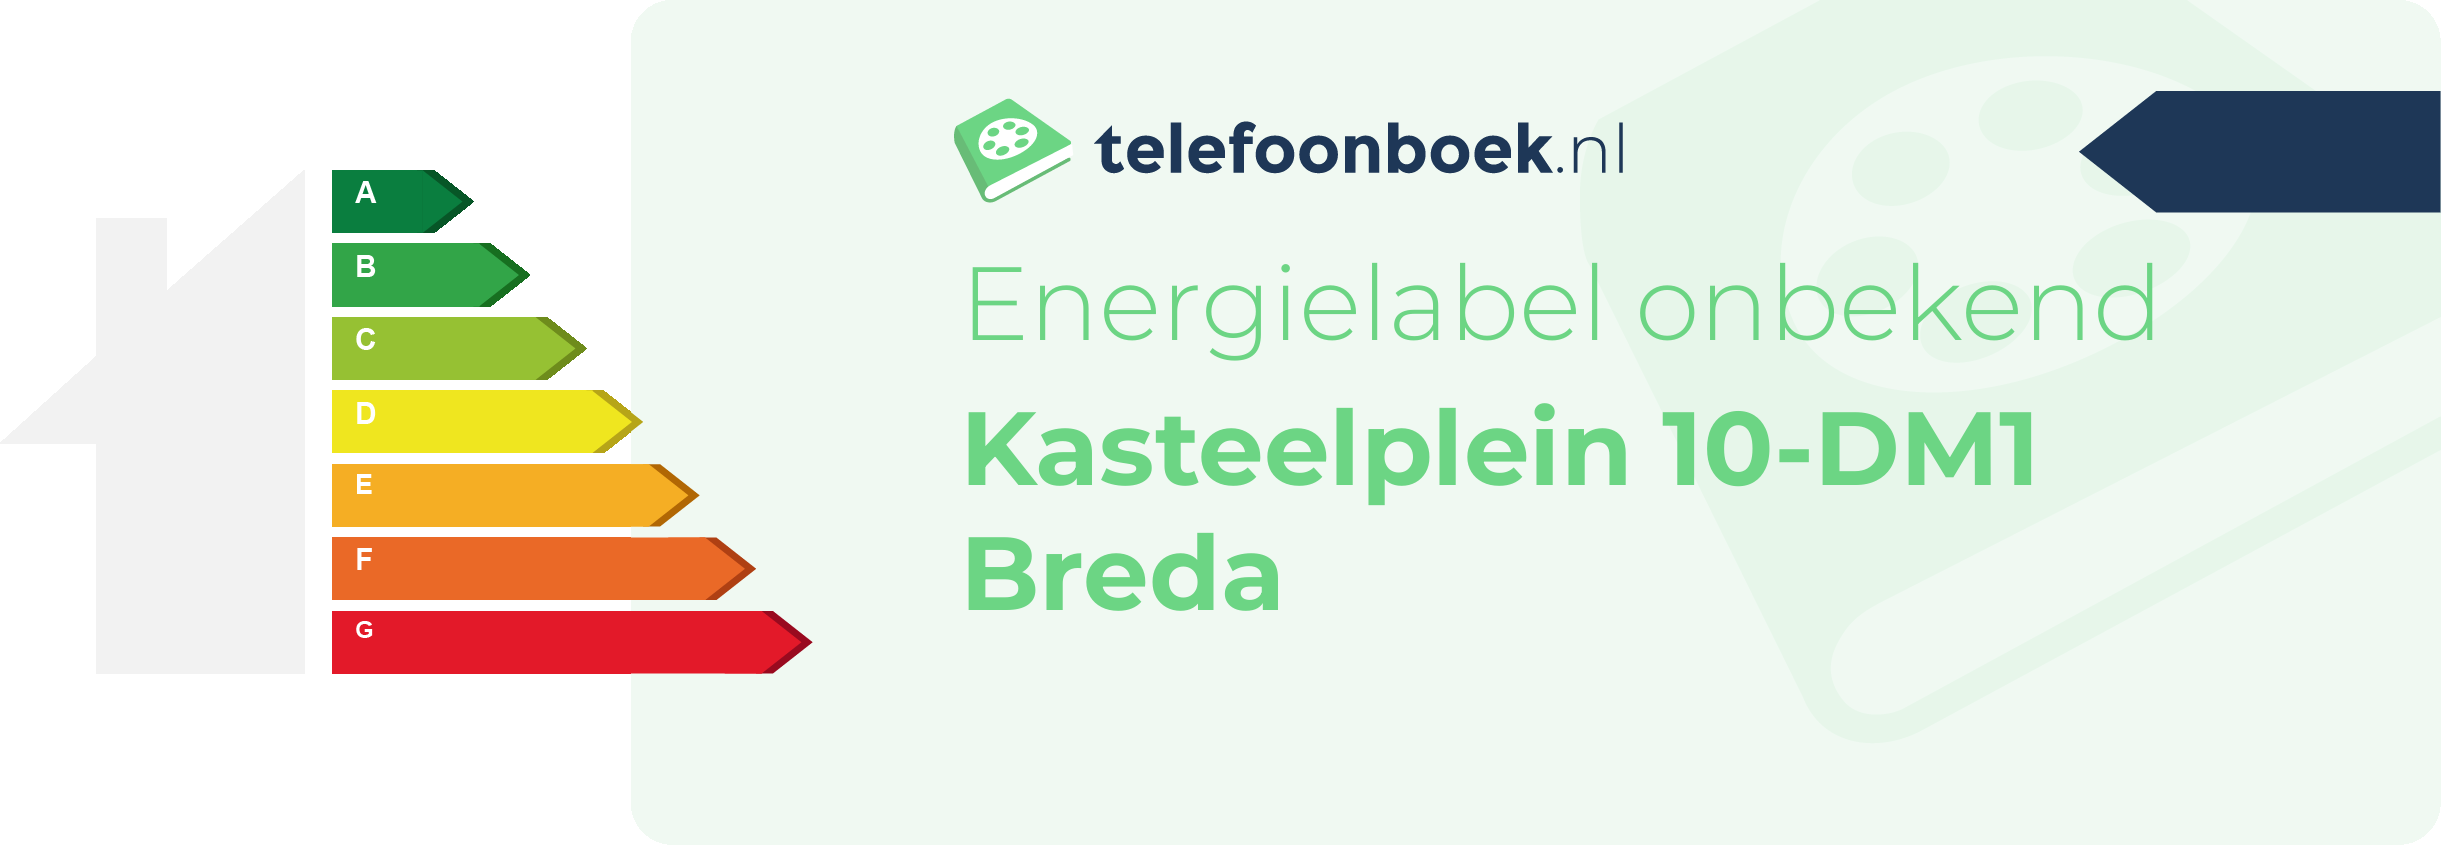 Energielabel Kasteelplein 10-DM1 Breda